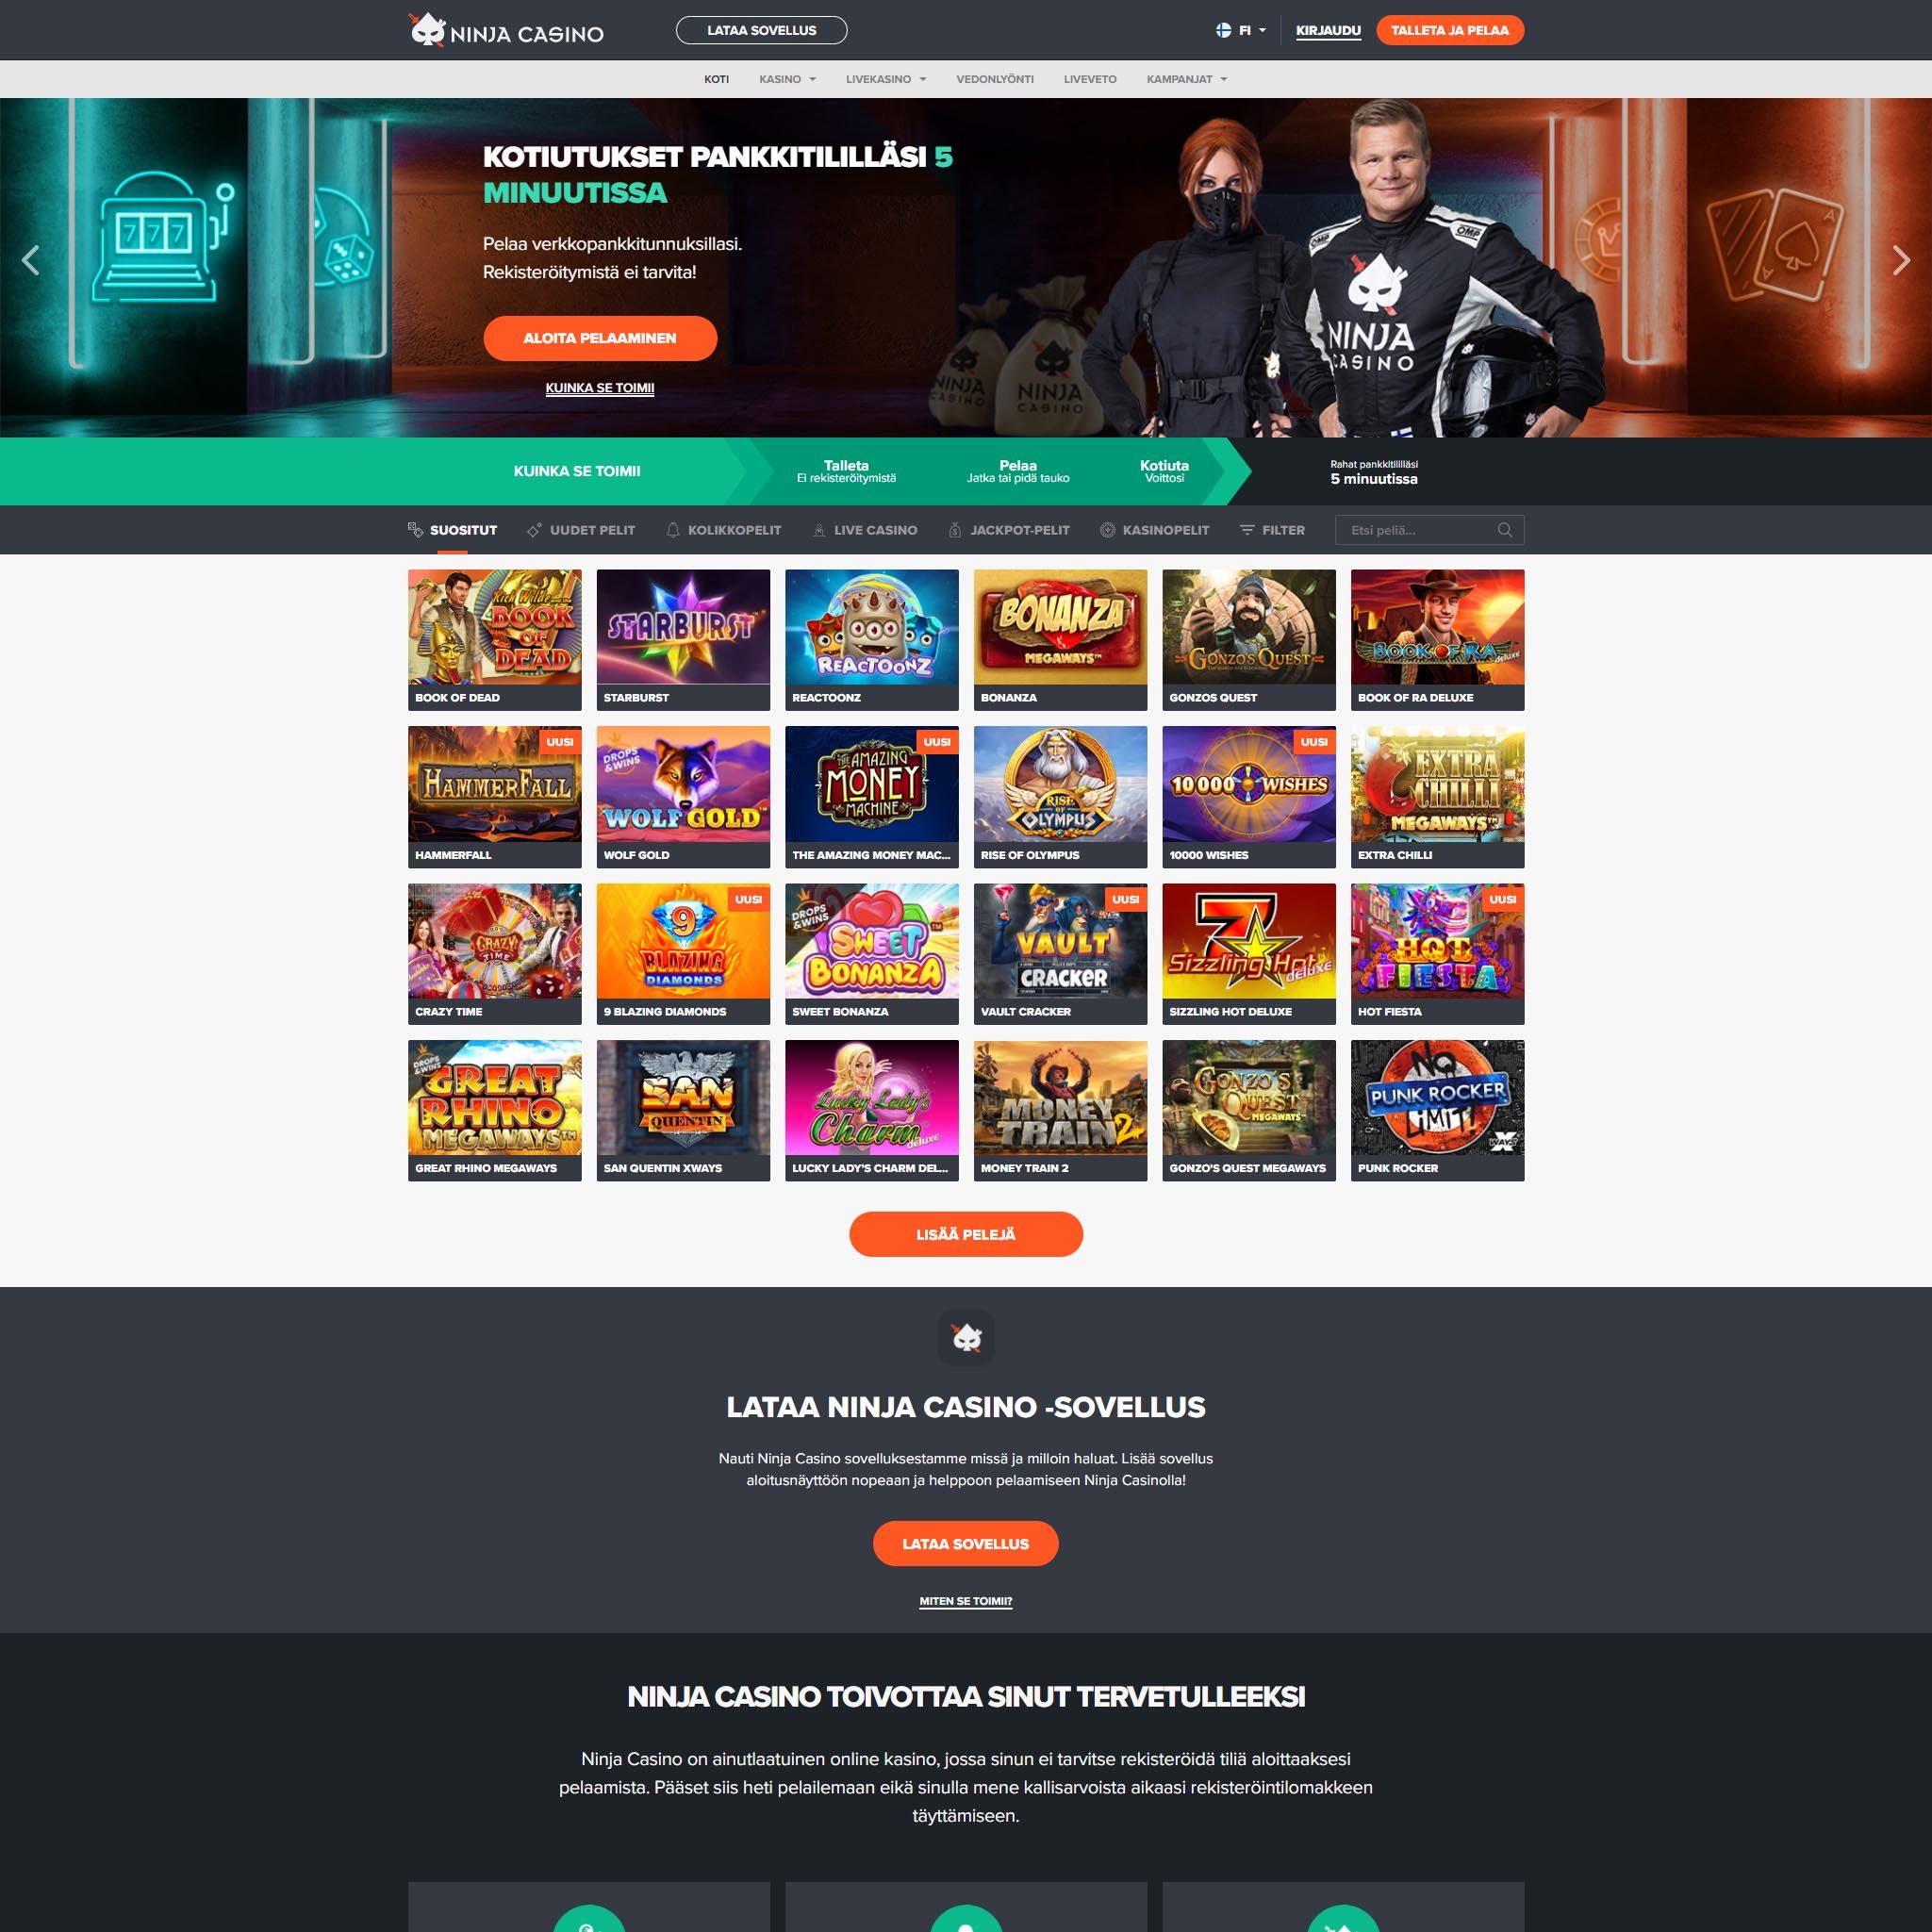 Suomalaiset nettikasinot tarjoavat monia hyötyjä pelaajille. Ninja Casino on suosittelemamme nettikasino, jolle voit lunastaa bonuksia ja muita etuja.